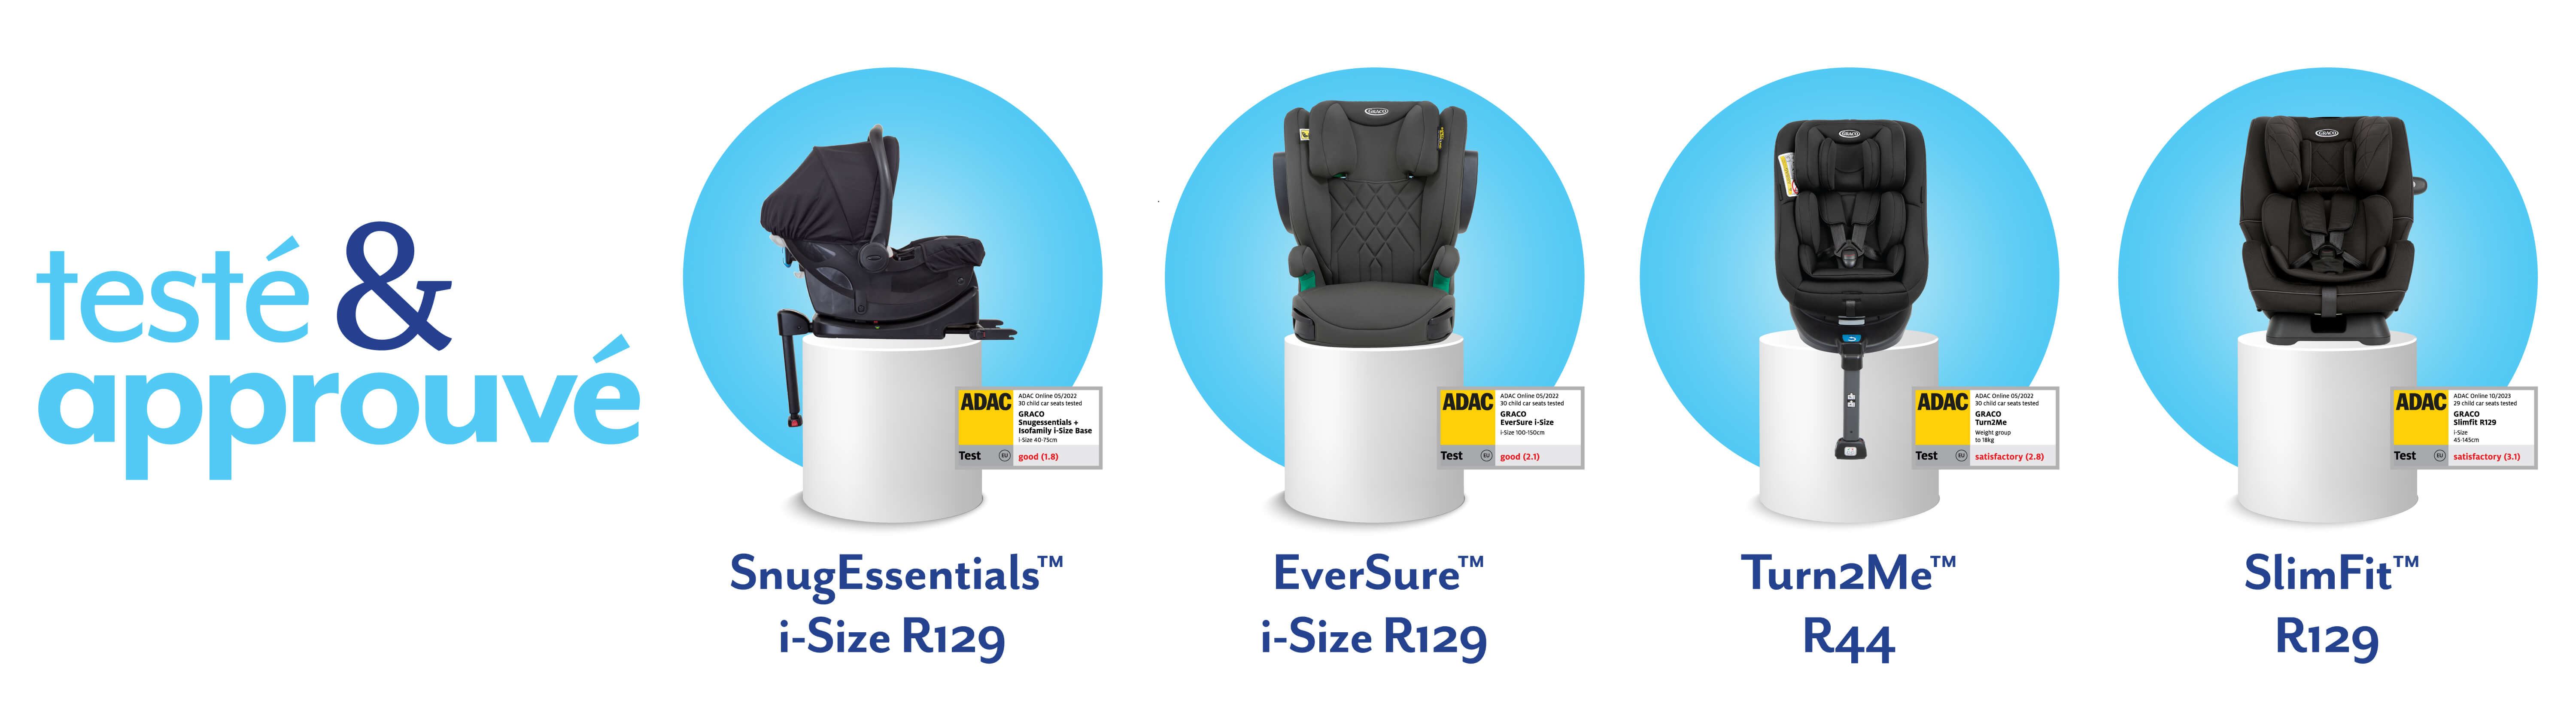 Les sièges-auto et coques naissance SnugEssentials™ i-Size, EverSure™ i-Size et Turn2Me™ SlimFit R129 de Graco® installés sur des socles blancs